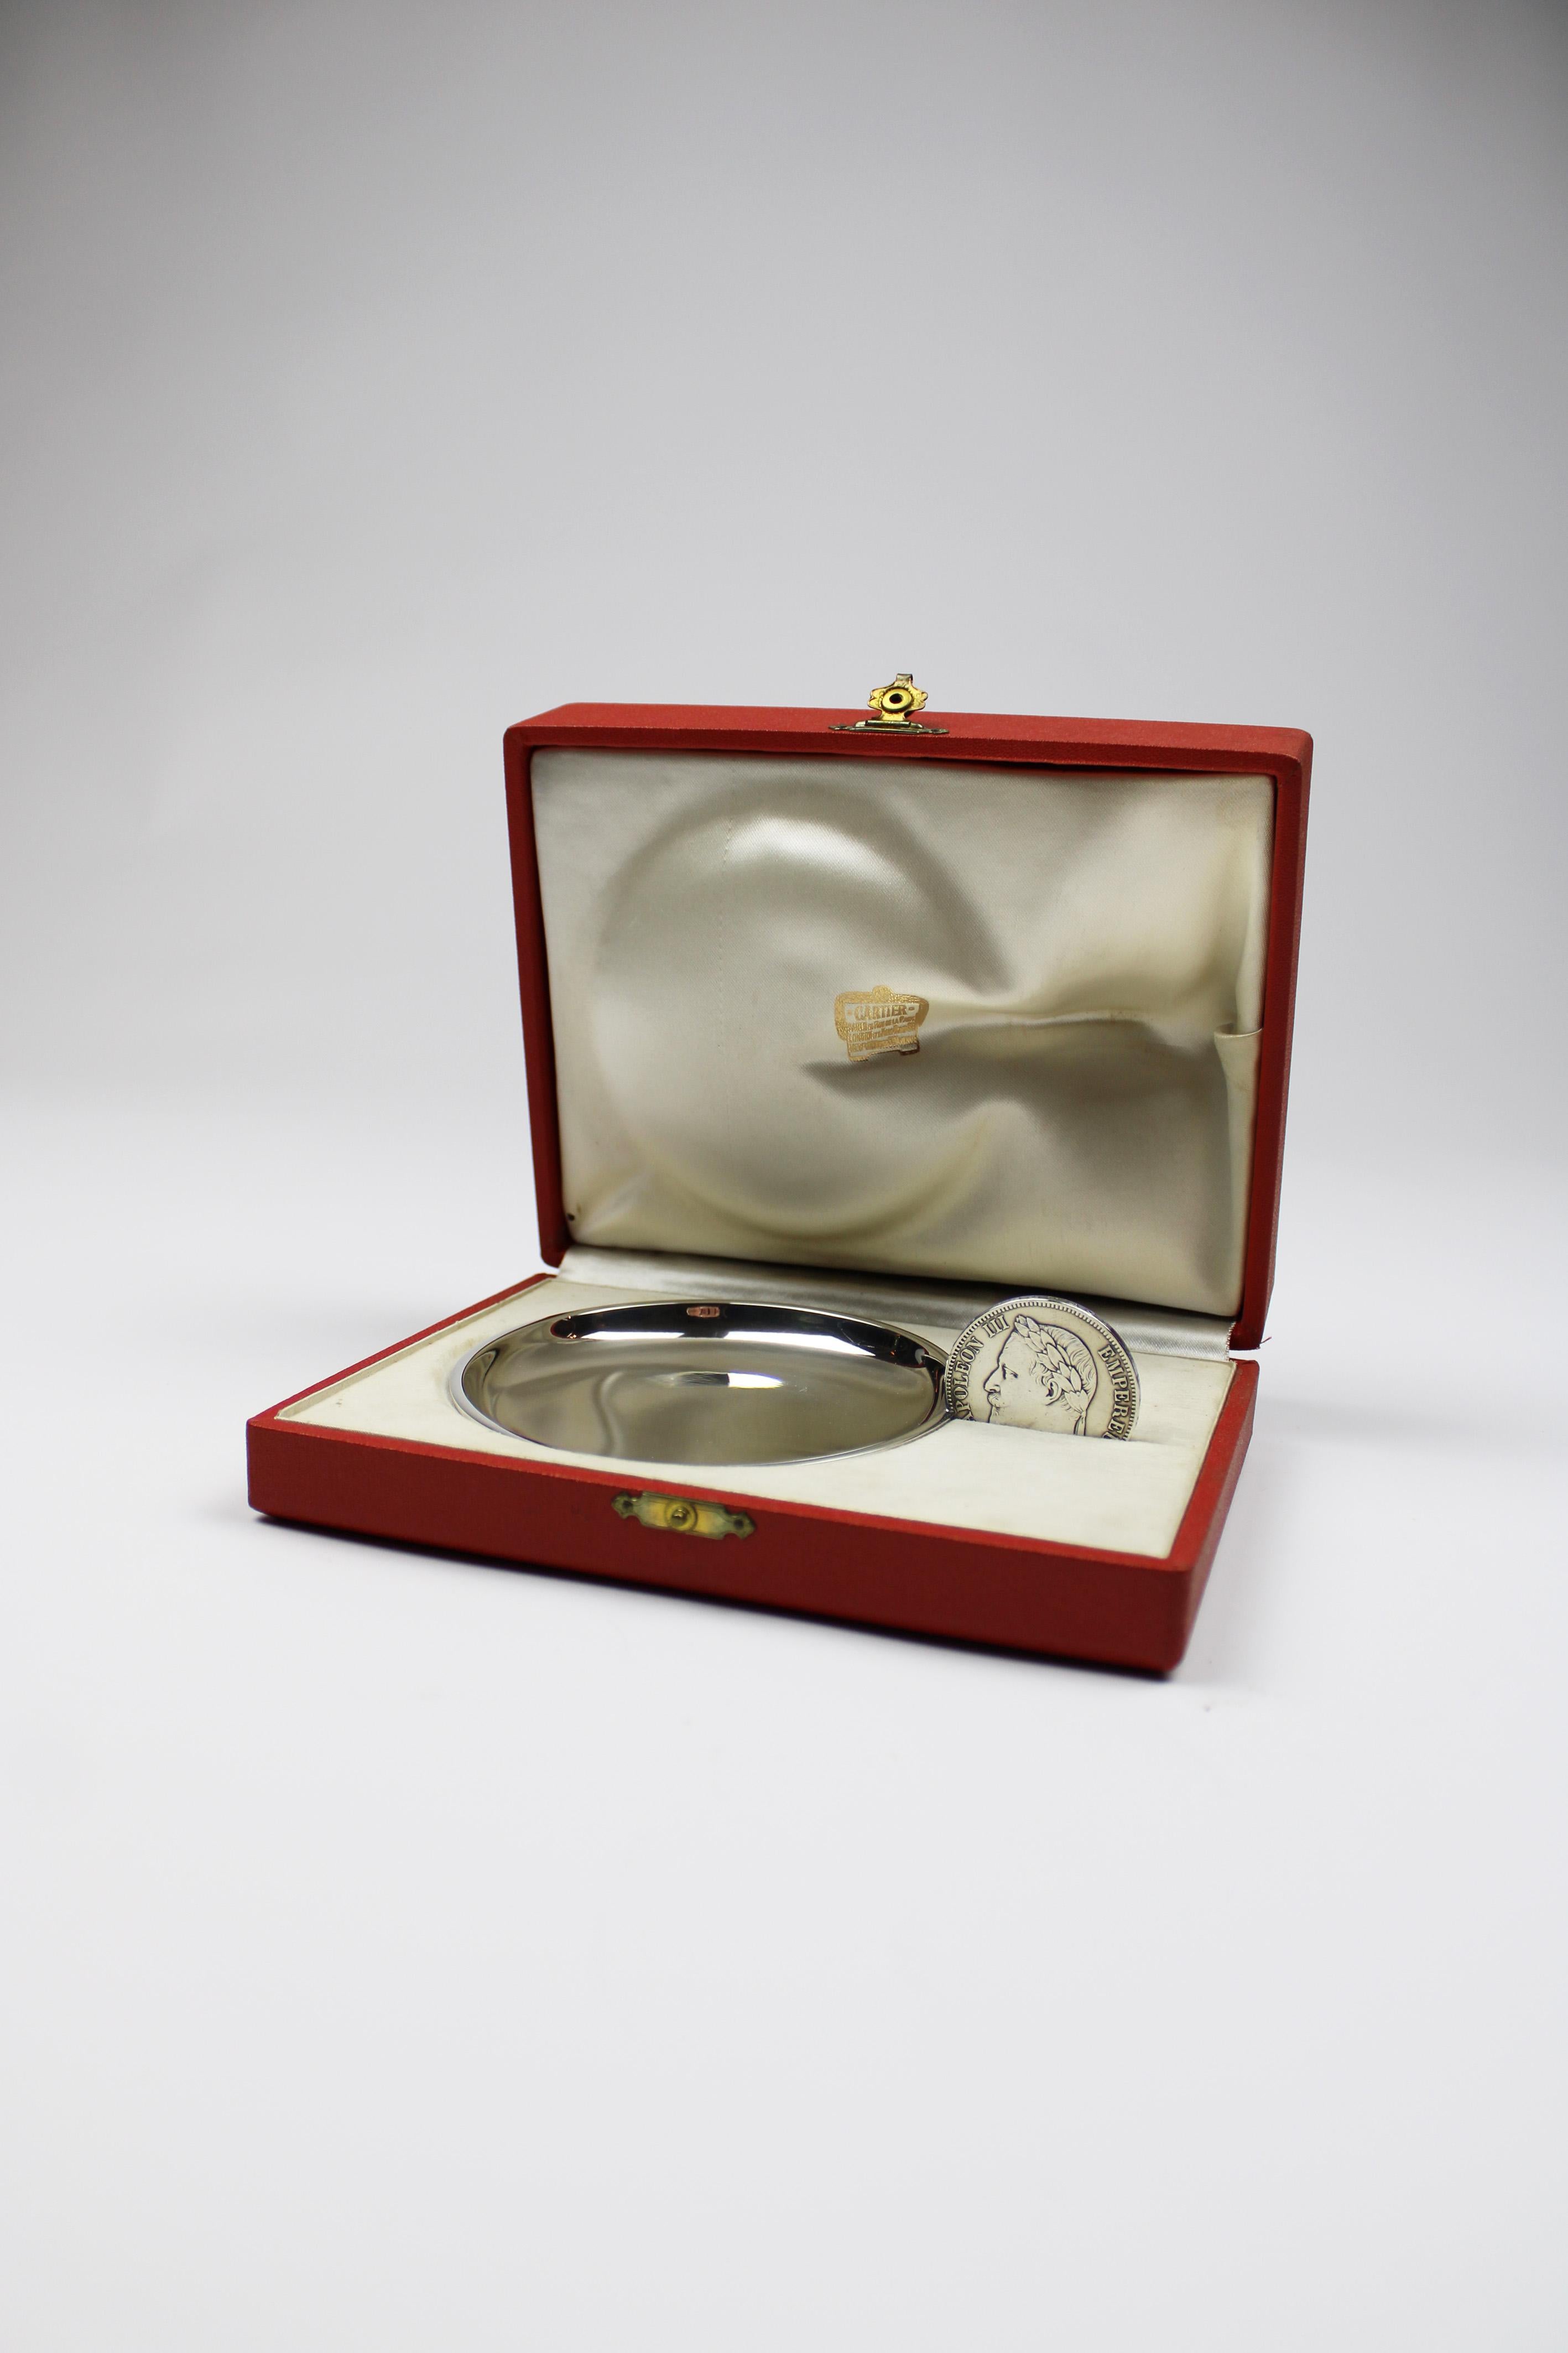 Ce rare taste-vin en argent de Cartier, également appelé Tastevin, est un exemple de luxe et de design du XXe siècle. Aujourd'hui encore, Cartier est l'un des acteurs majeurs du raffinement des diamants, des montres et autres objets de luxe. La